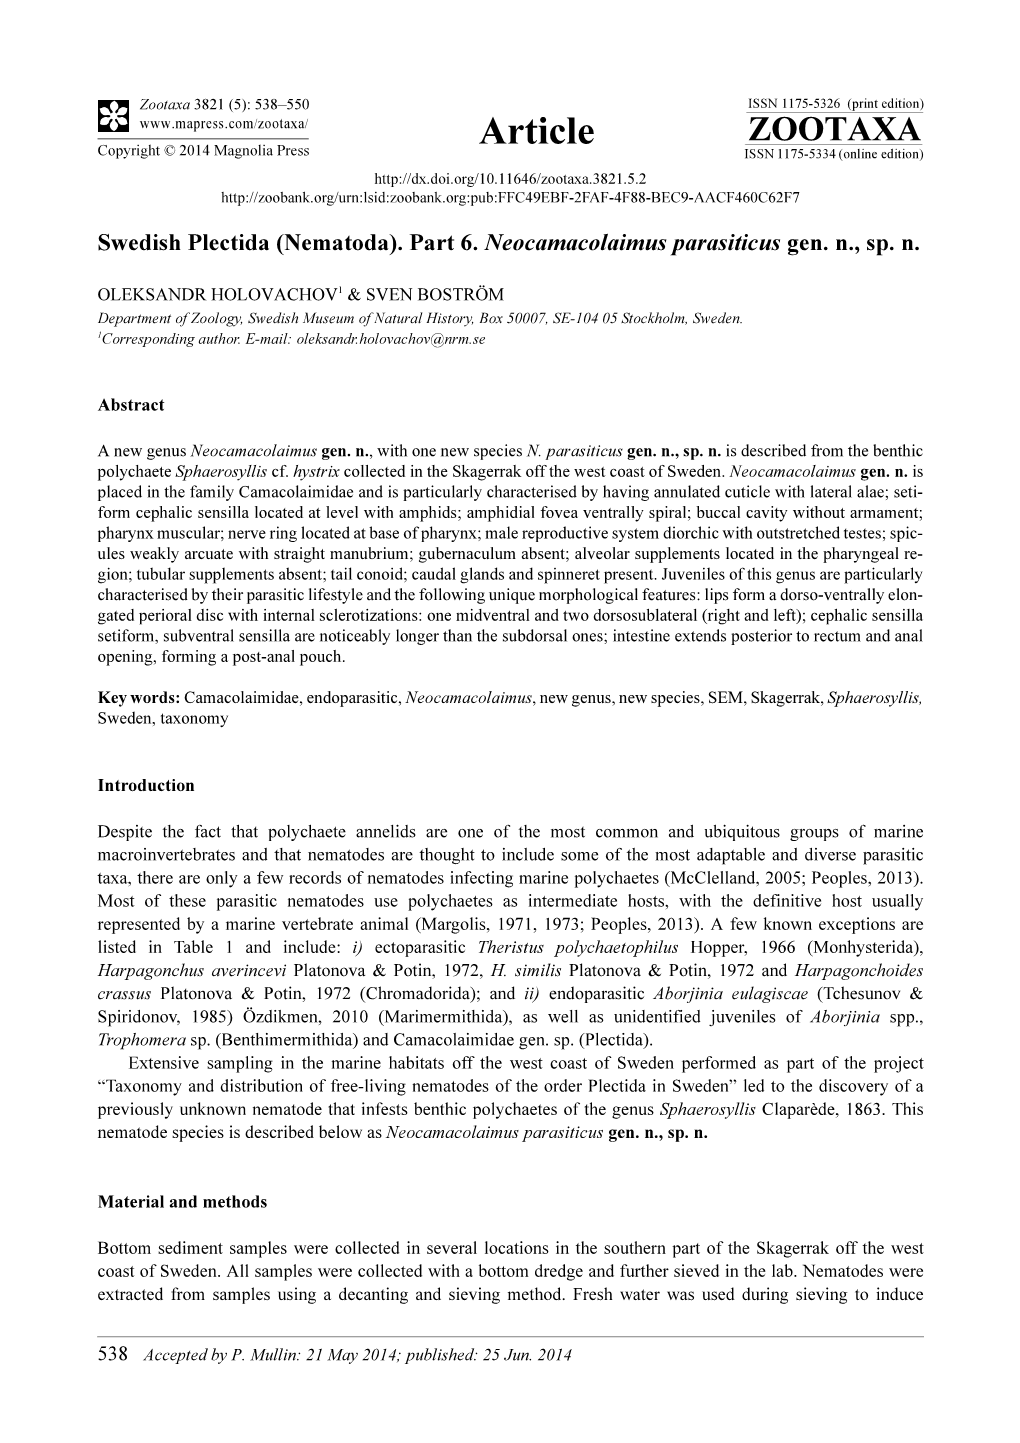 Swedish Plectida (Nematoda). Part 6. Neocamacolaimus Parasiticus Gen